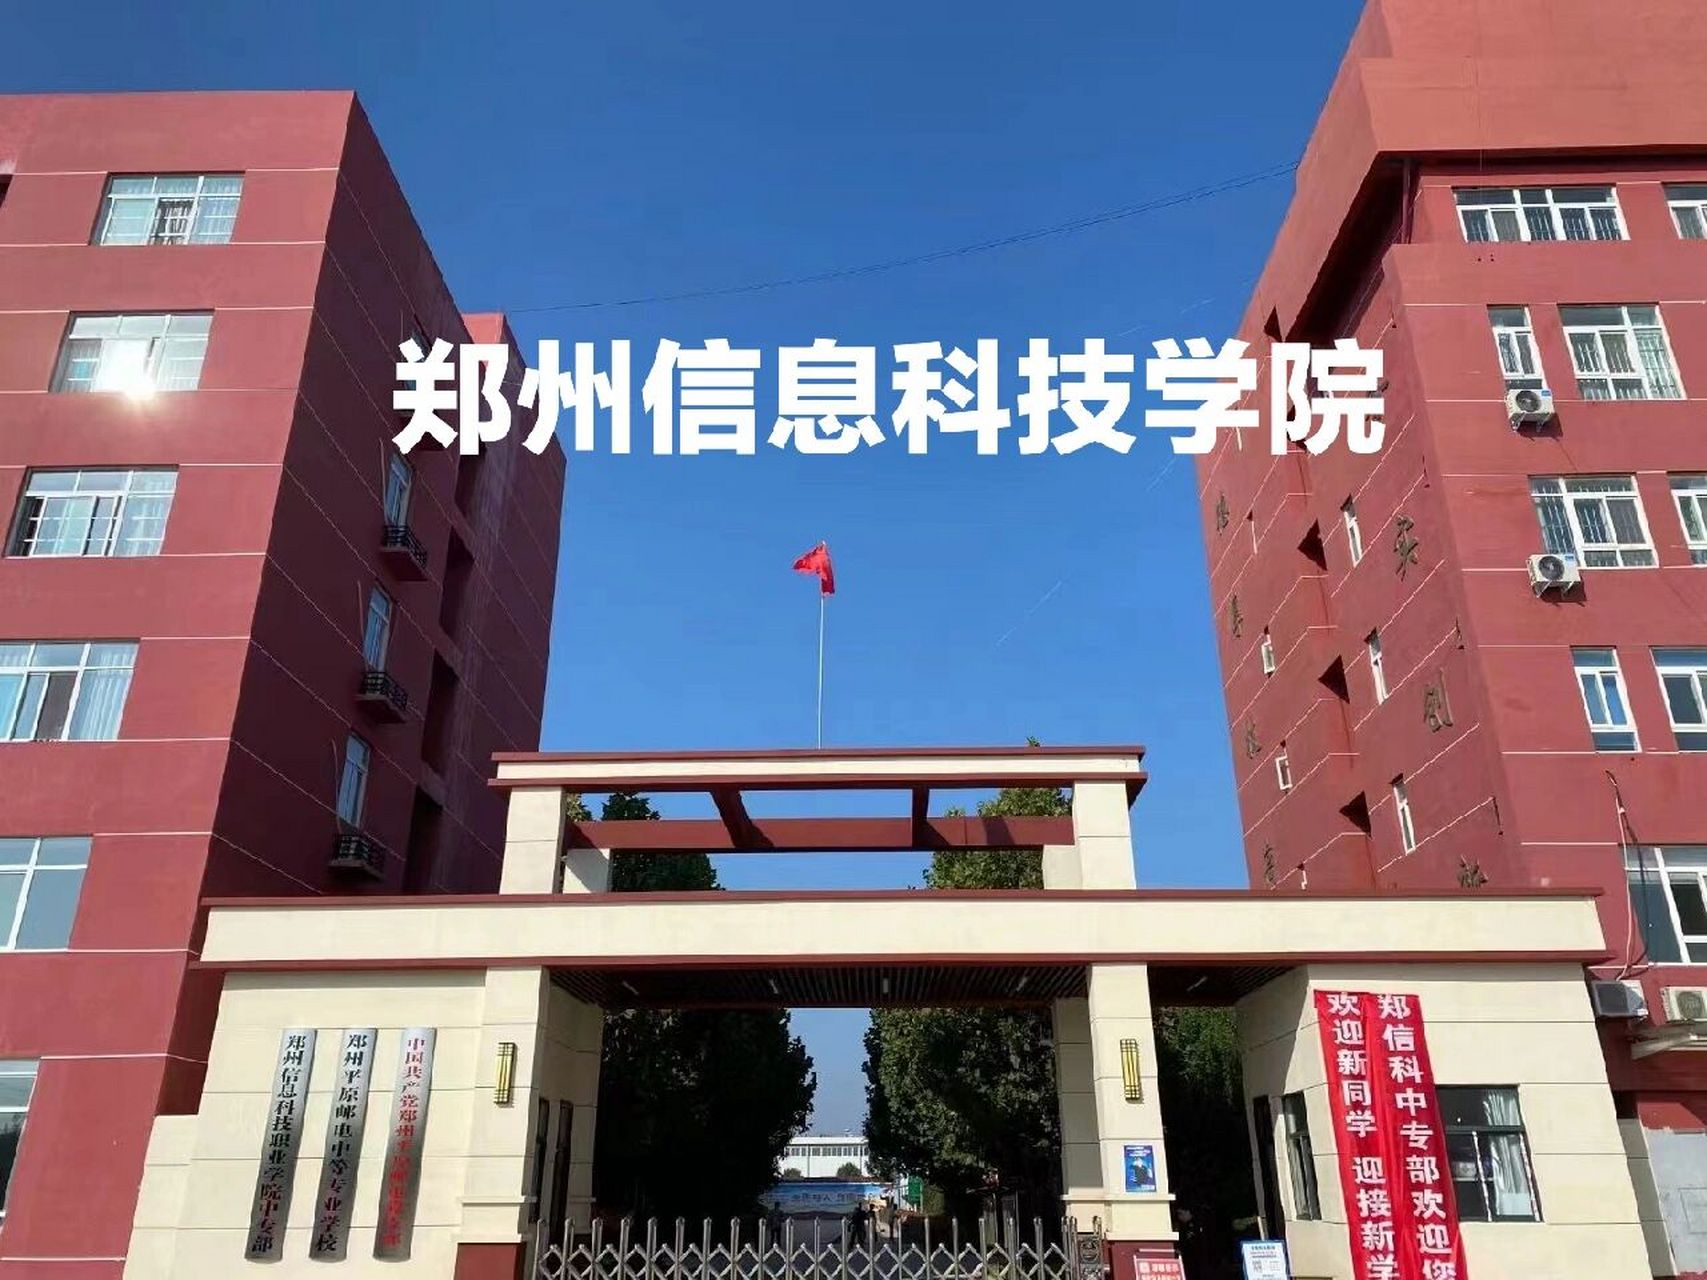 郑州信息科技职业学院 郑州信息科技学院是一所国家公办的全日制高职